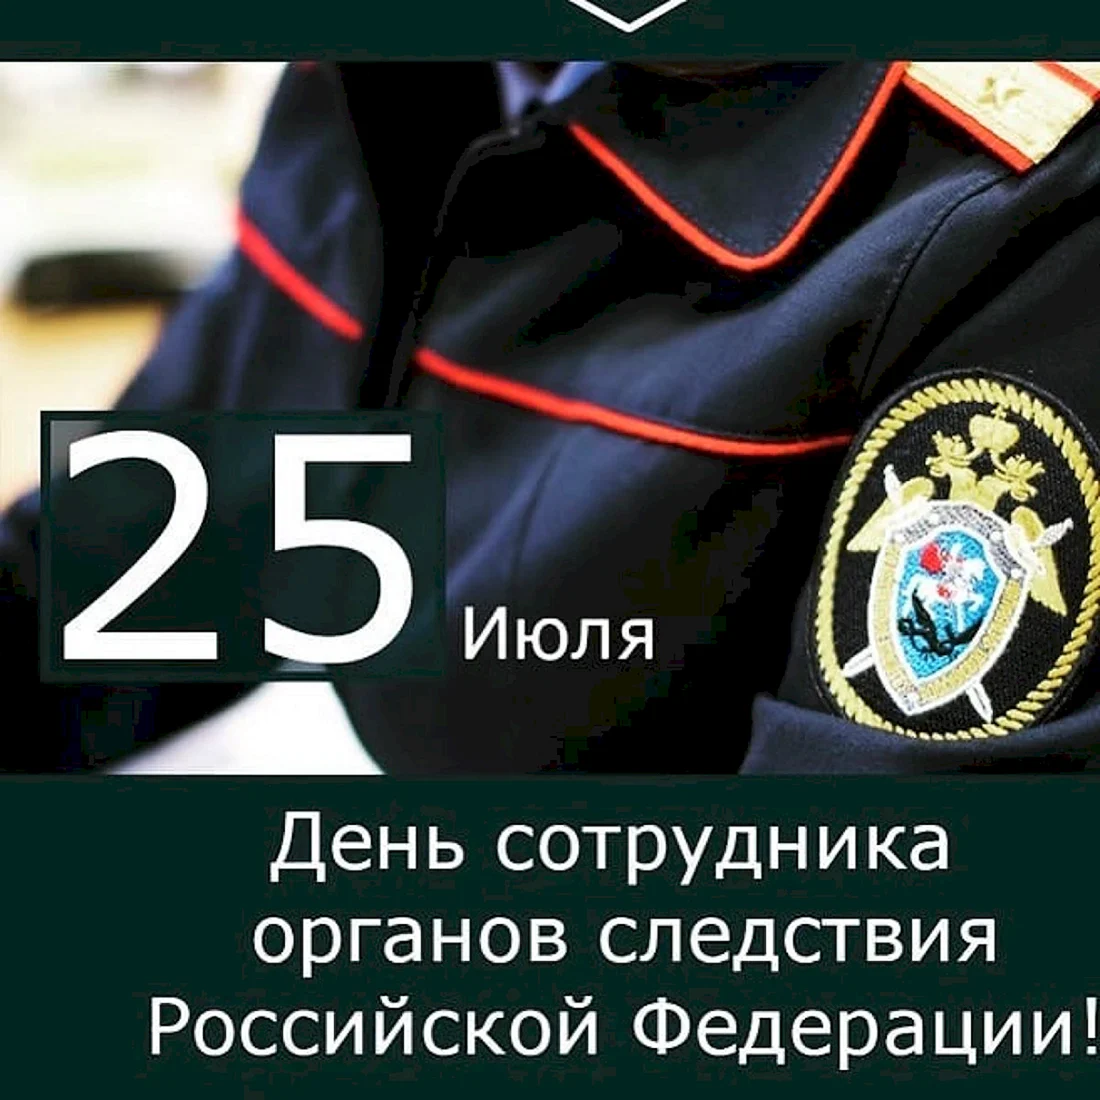 25 Июля день сотрудника органов следствия Российской Федерации